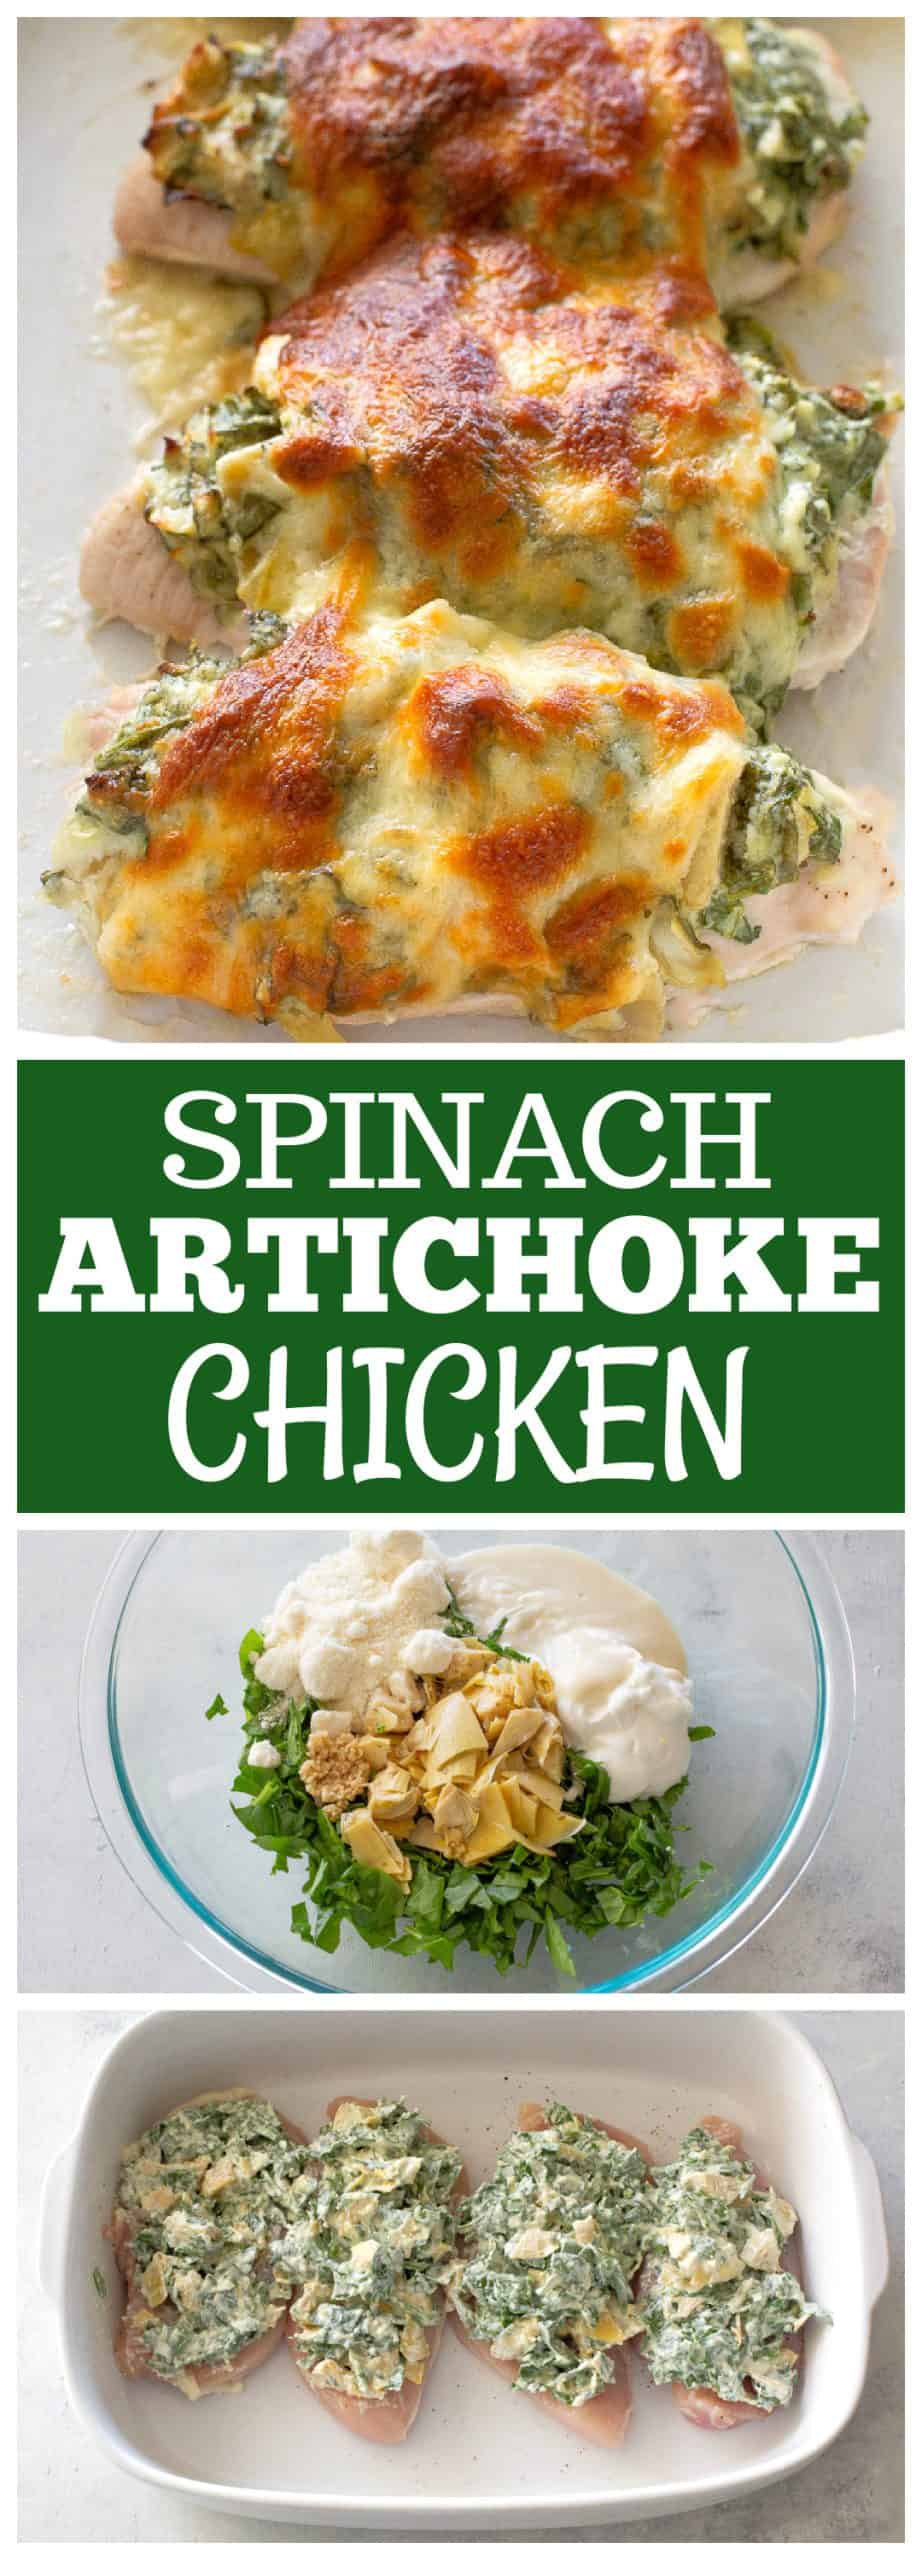 spinach artichoke chicken